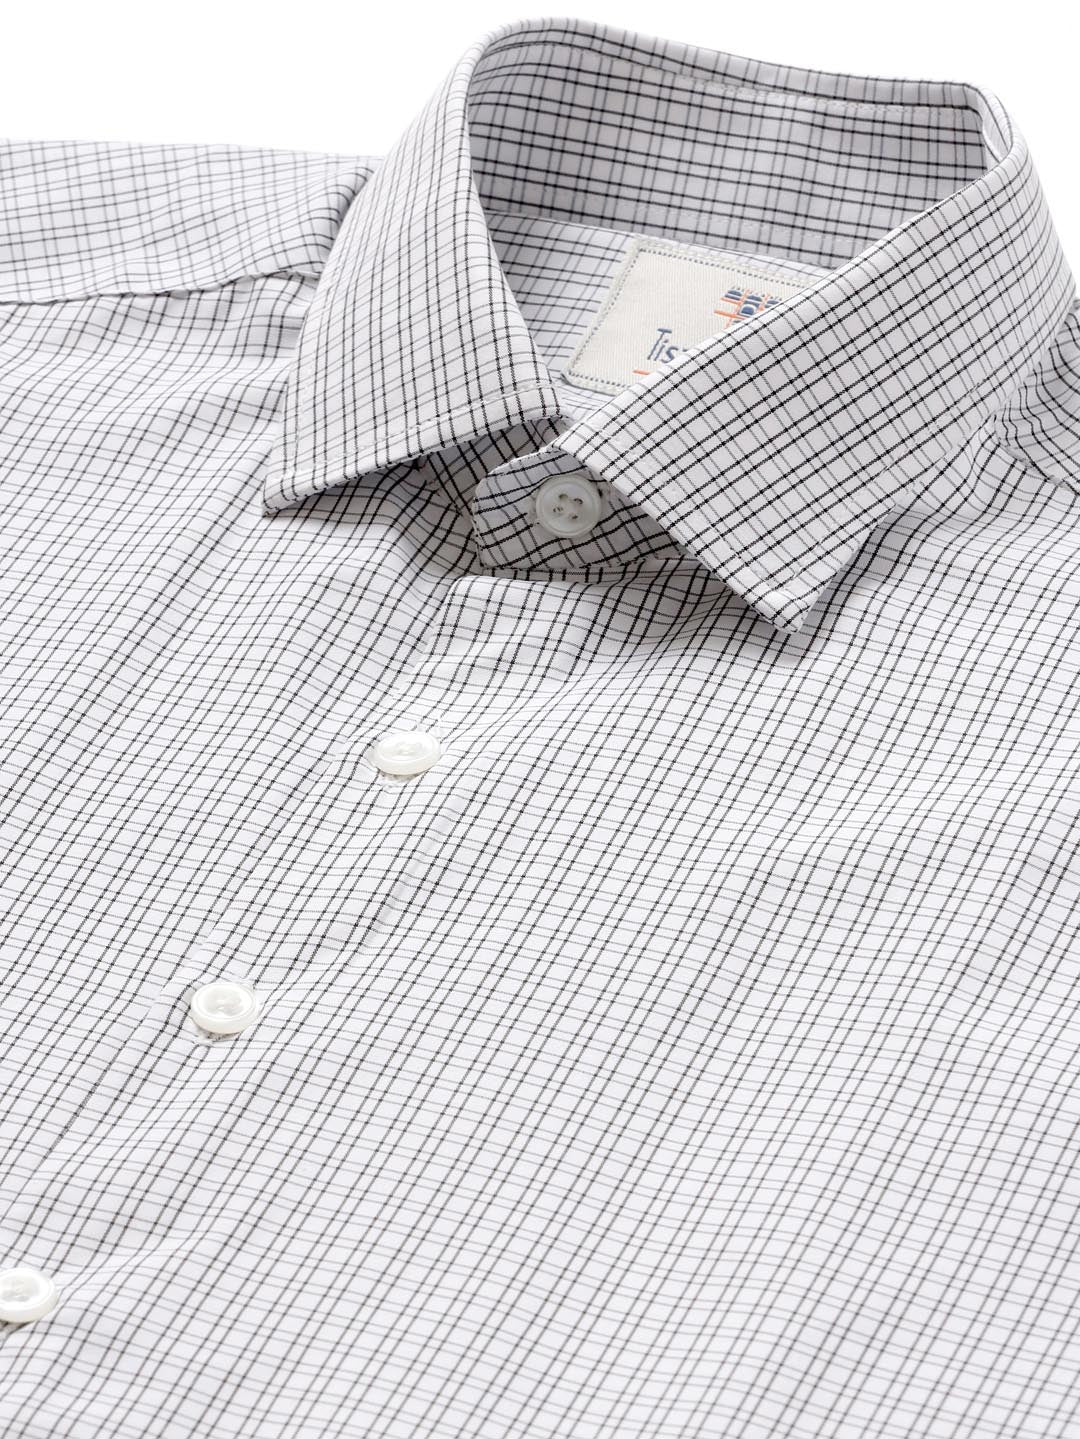 black and white checkered shirt